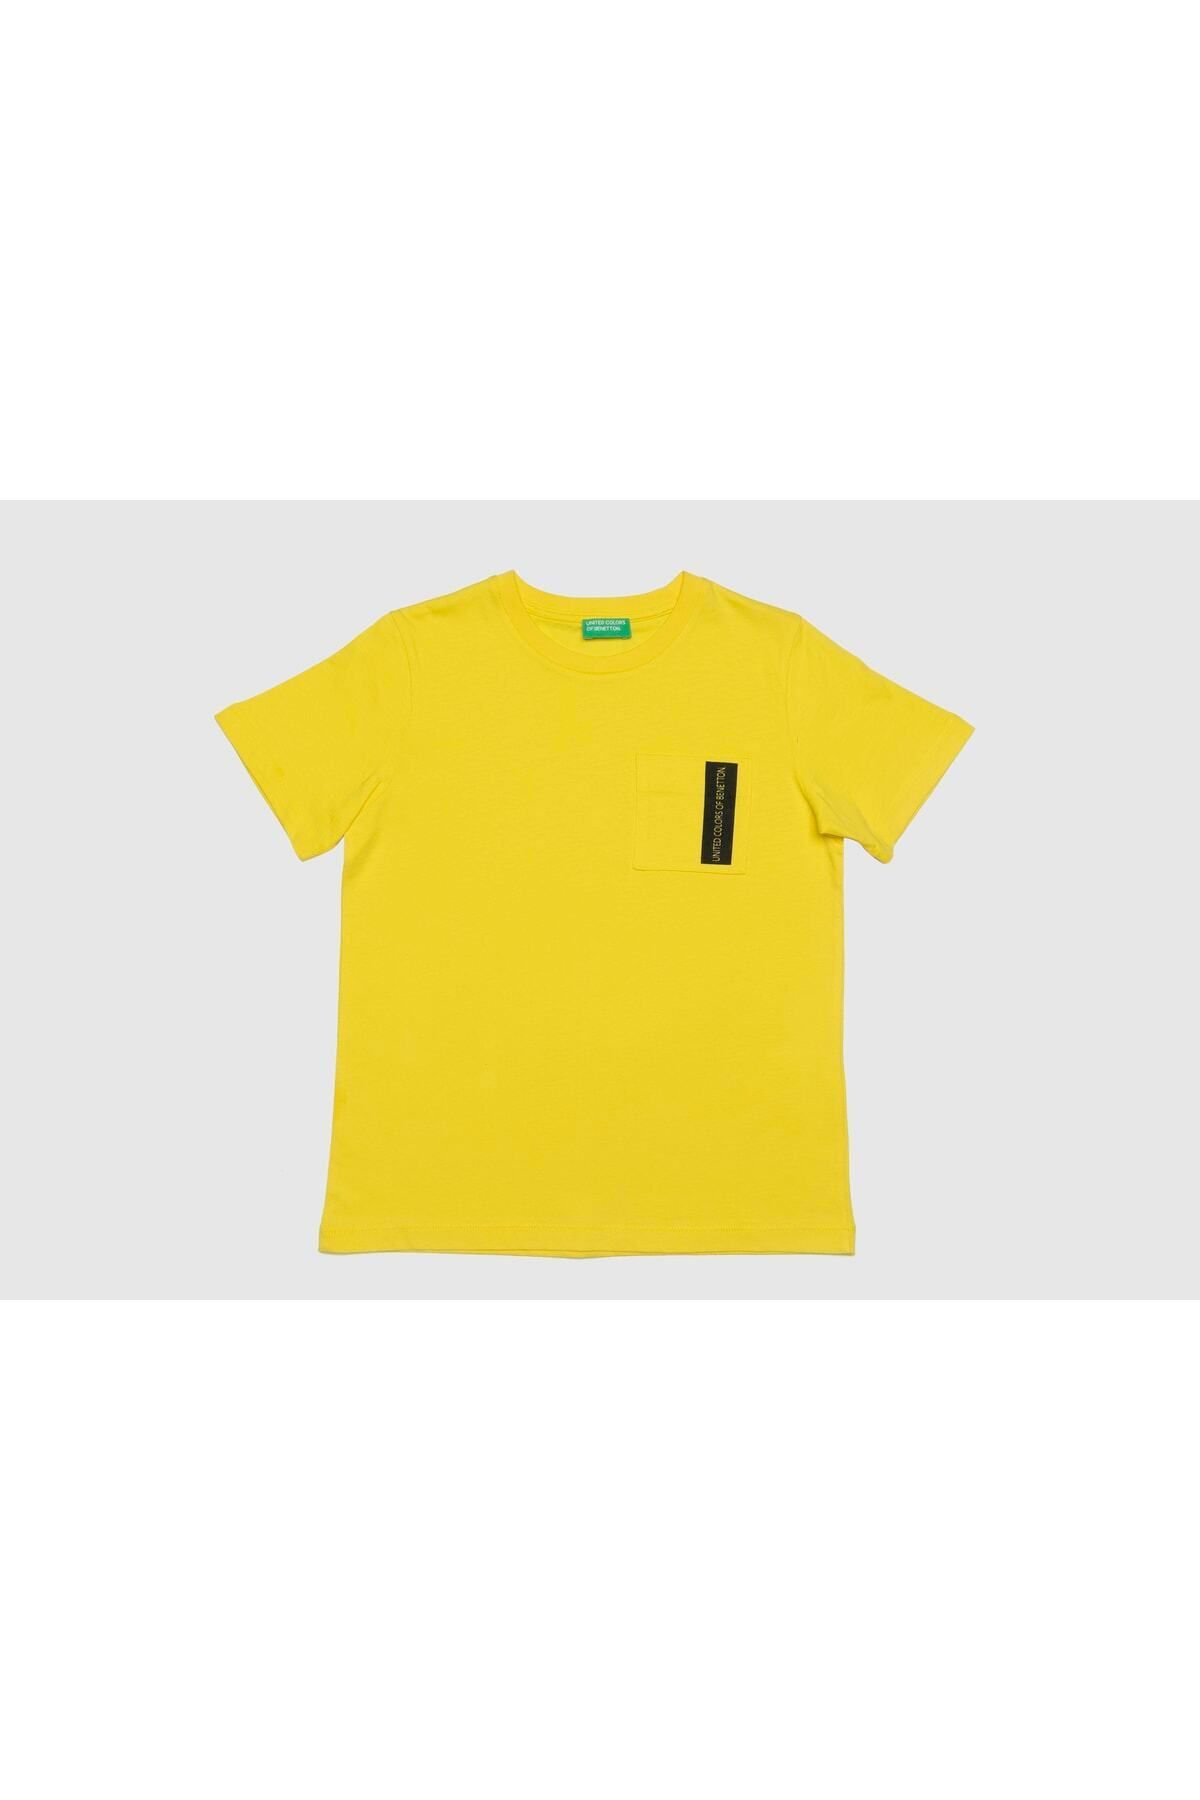 Benetton Erkek Çocuk Tshirt Bnt-b20524 Sarı